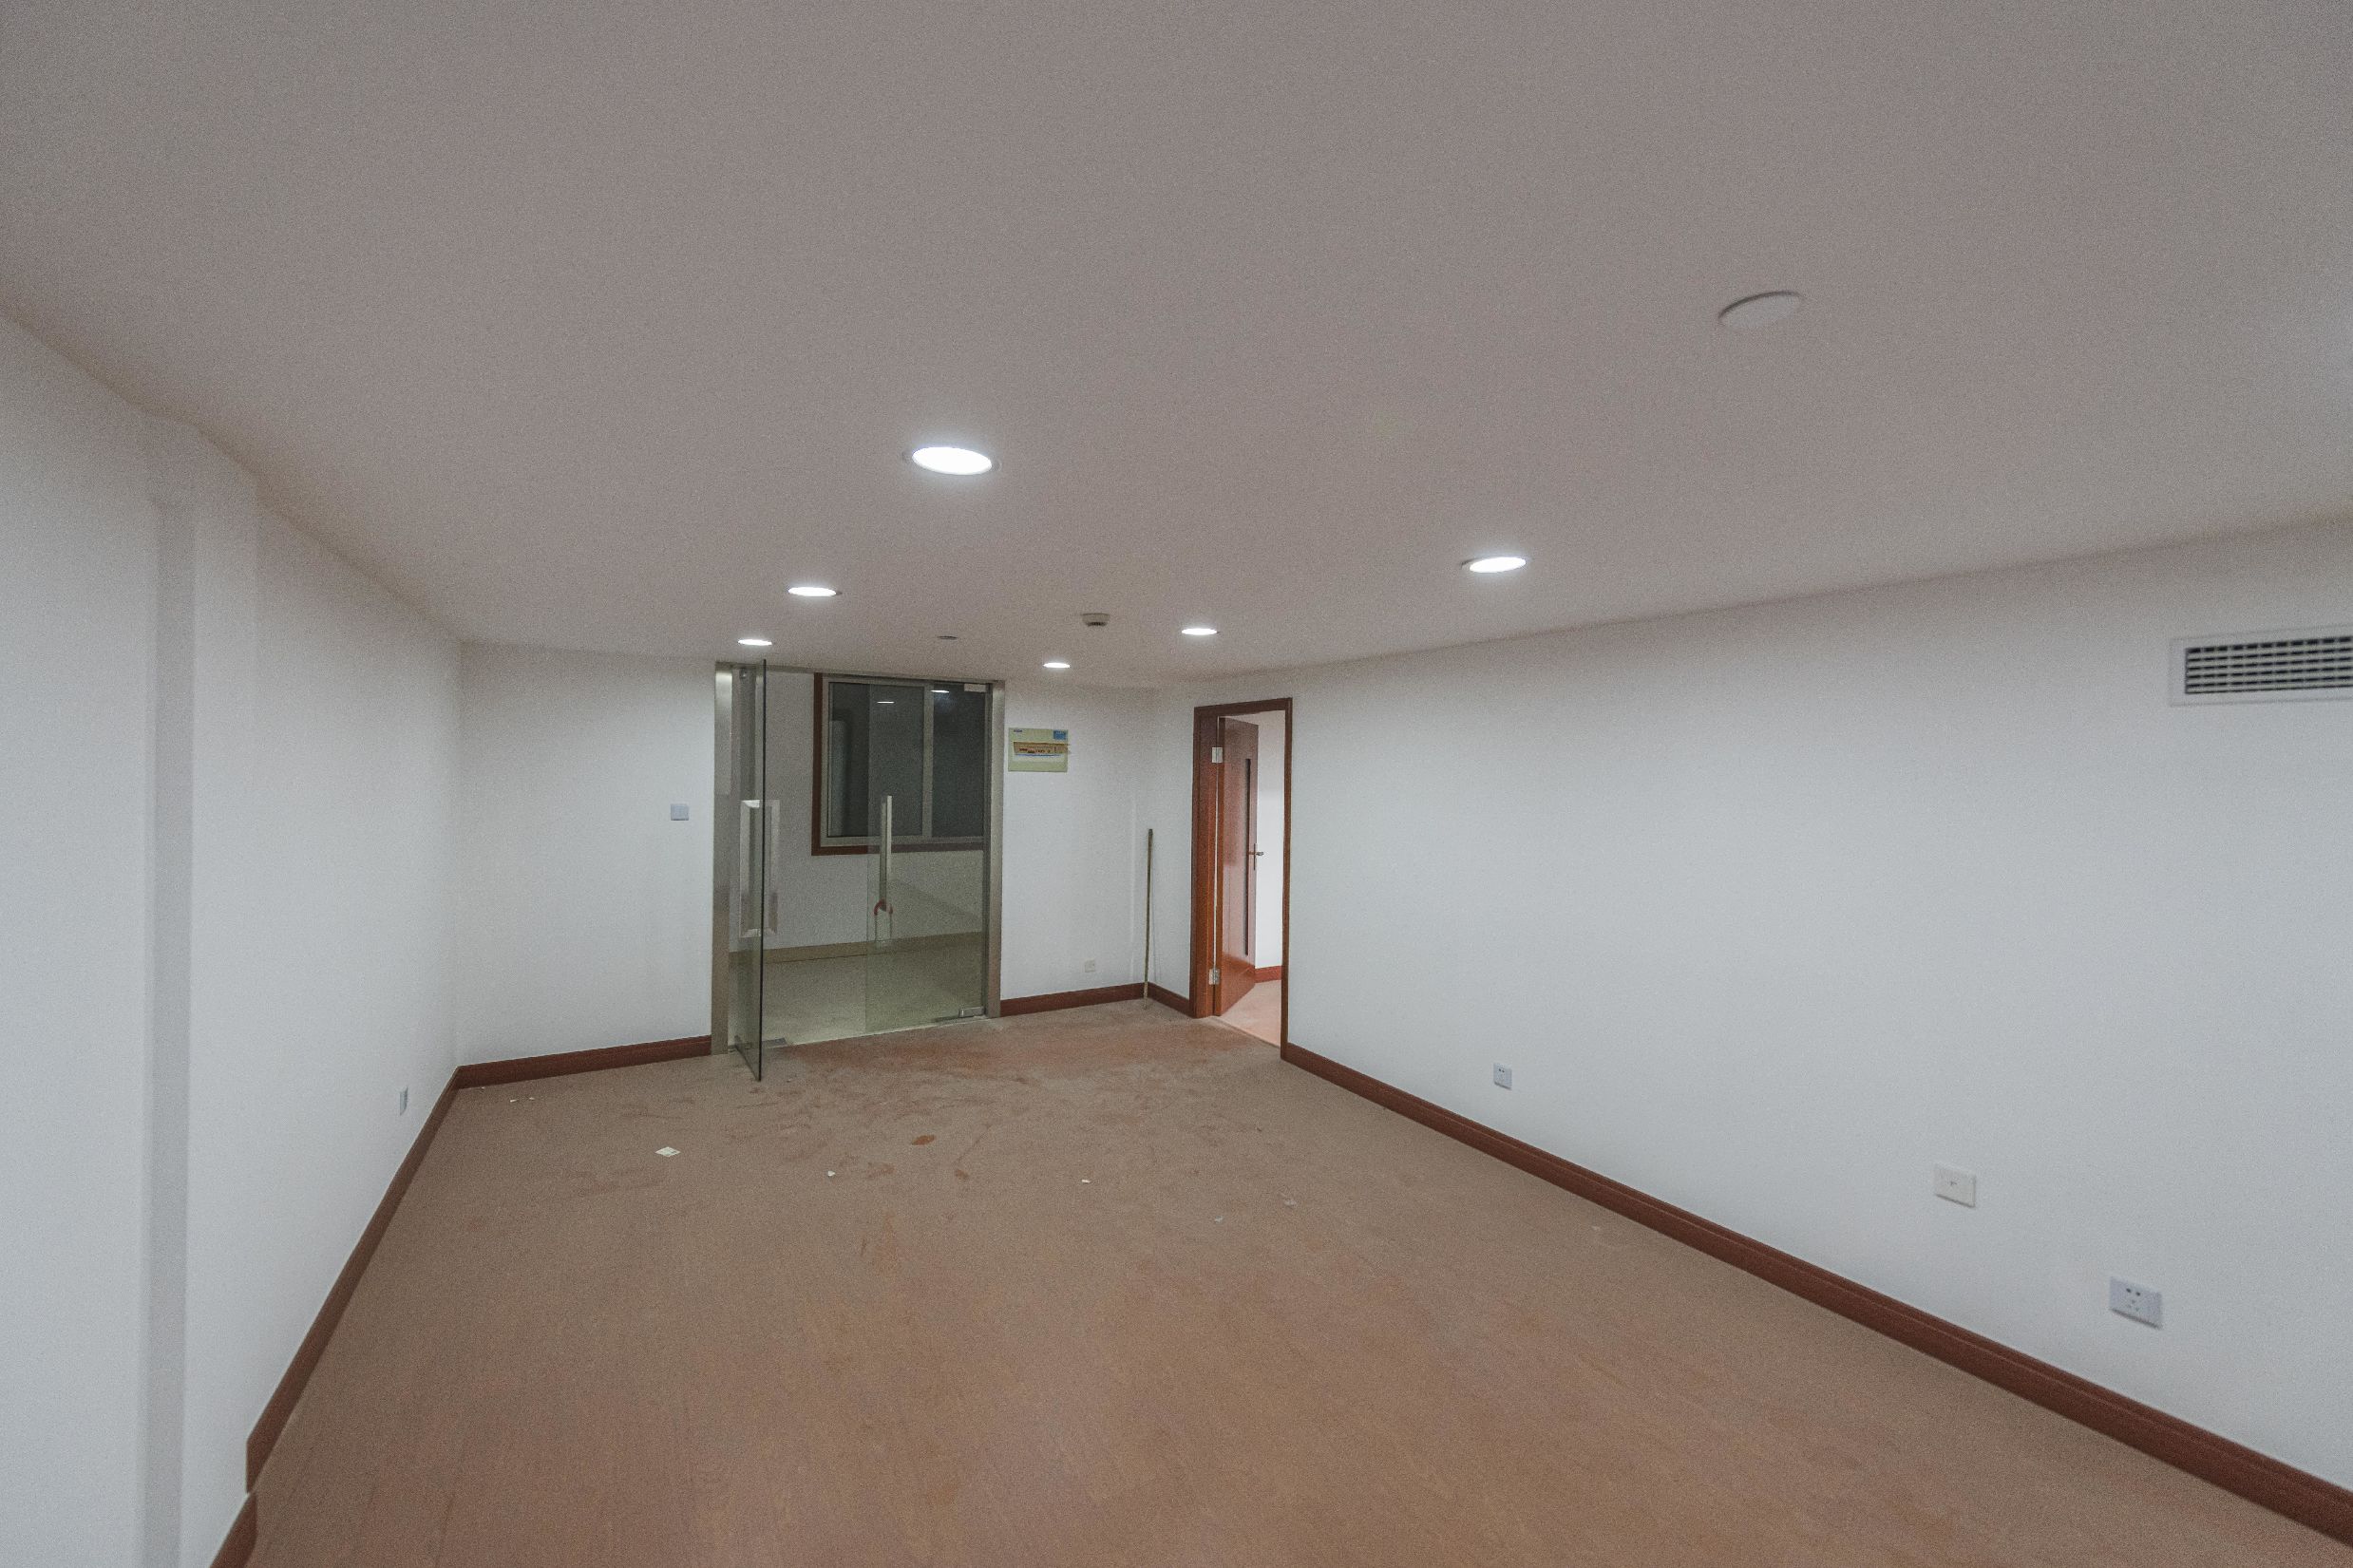 中天科技园二期147平米办公室出租-租金价格2.23元/m²/天